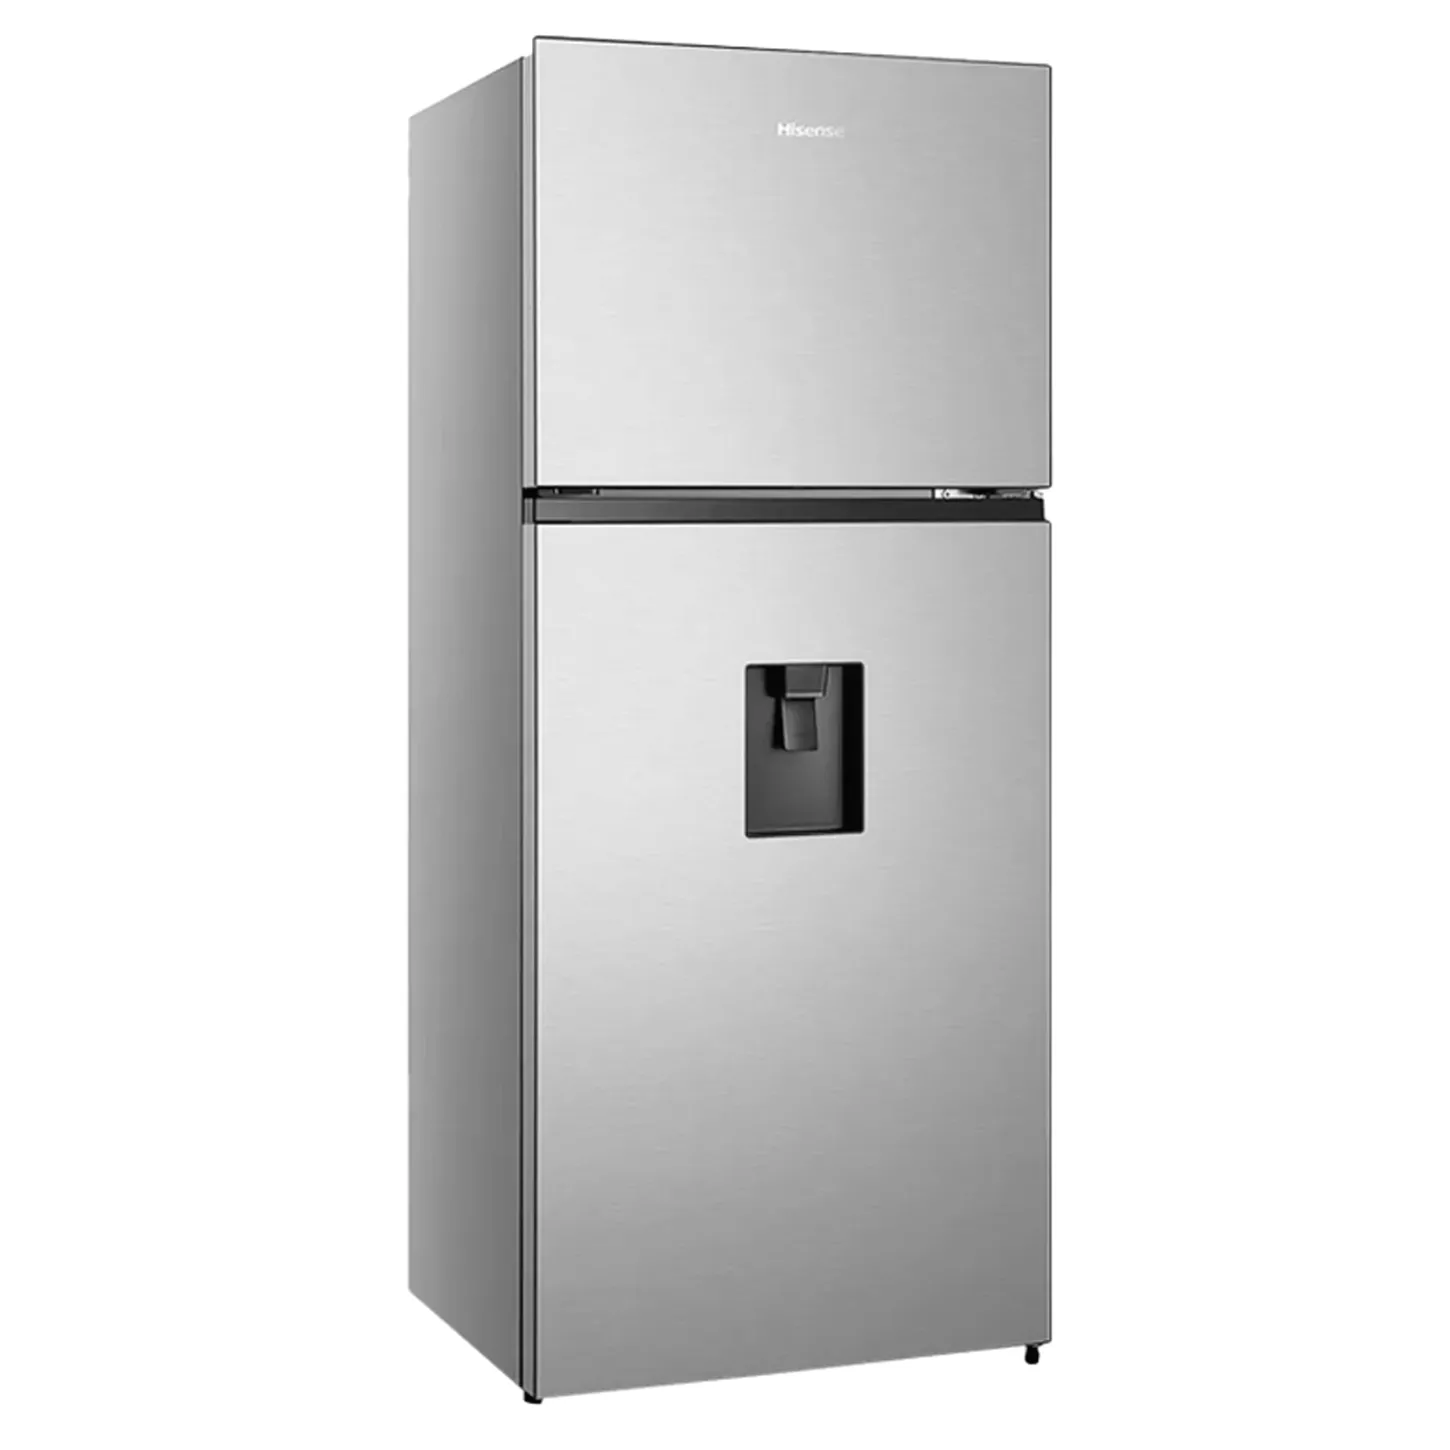 Refrigeradora de 13.5' Hisense